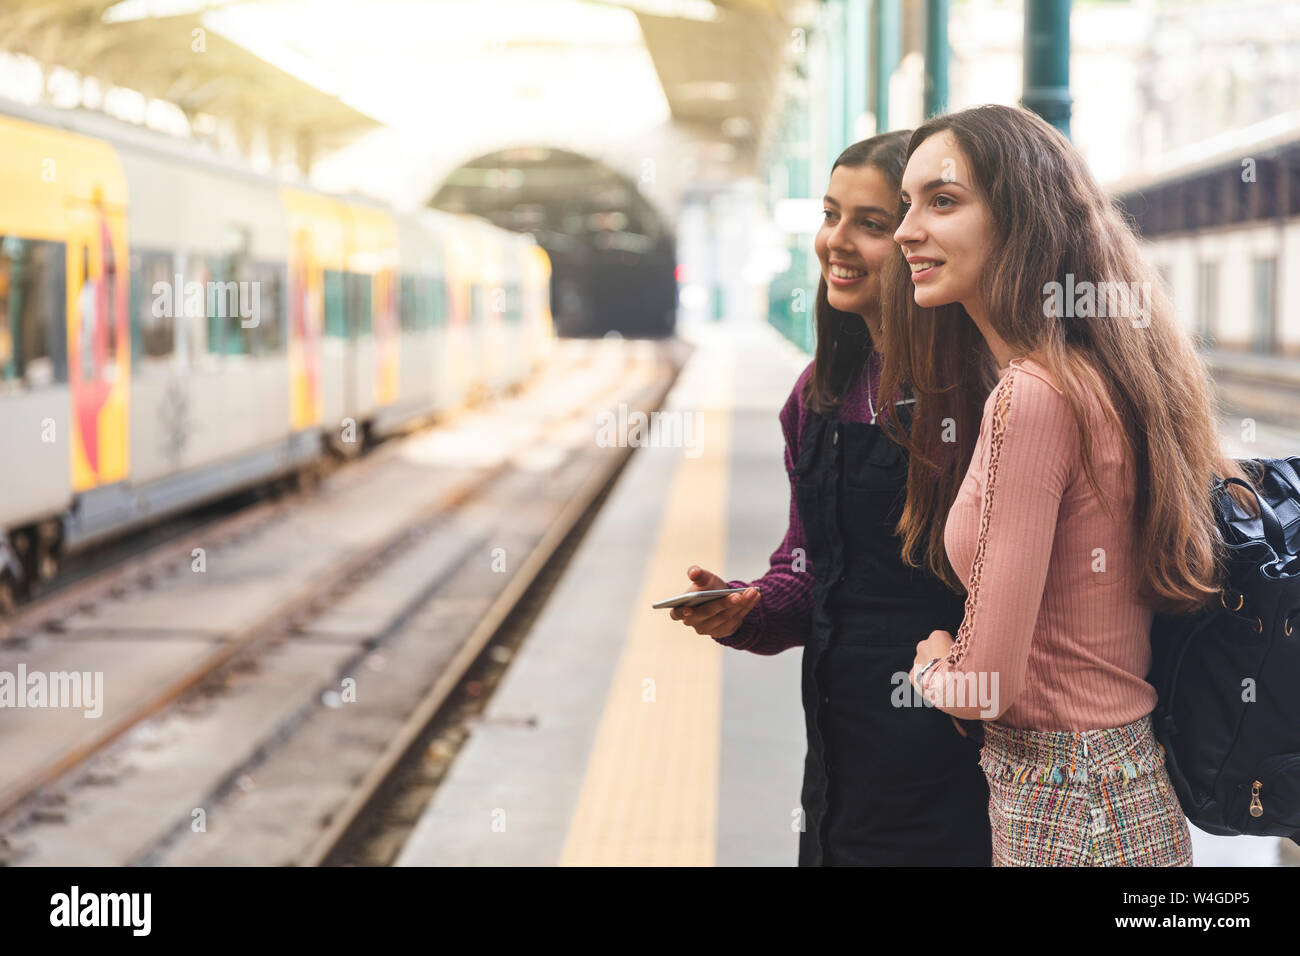 Zwei junge Frauen mit Rucksack und Handy steht auf Plattform beobachten etwas, Porto, Portugal Stockfoto